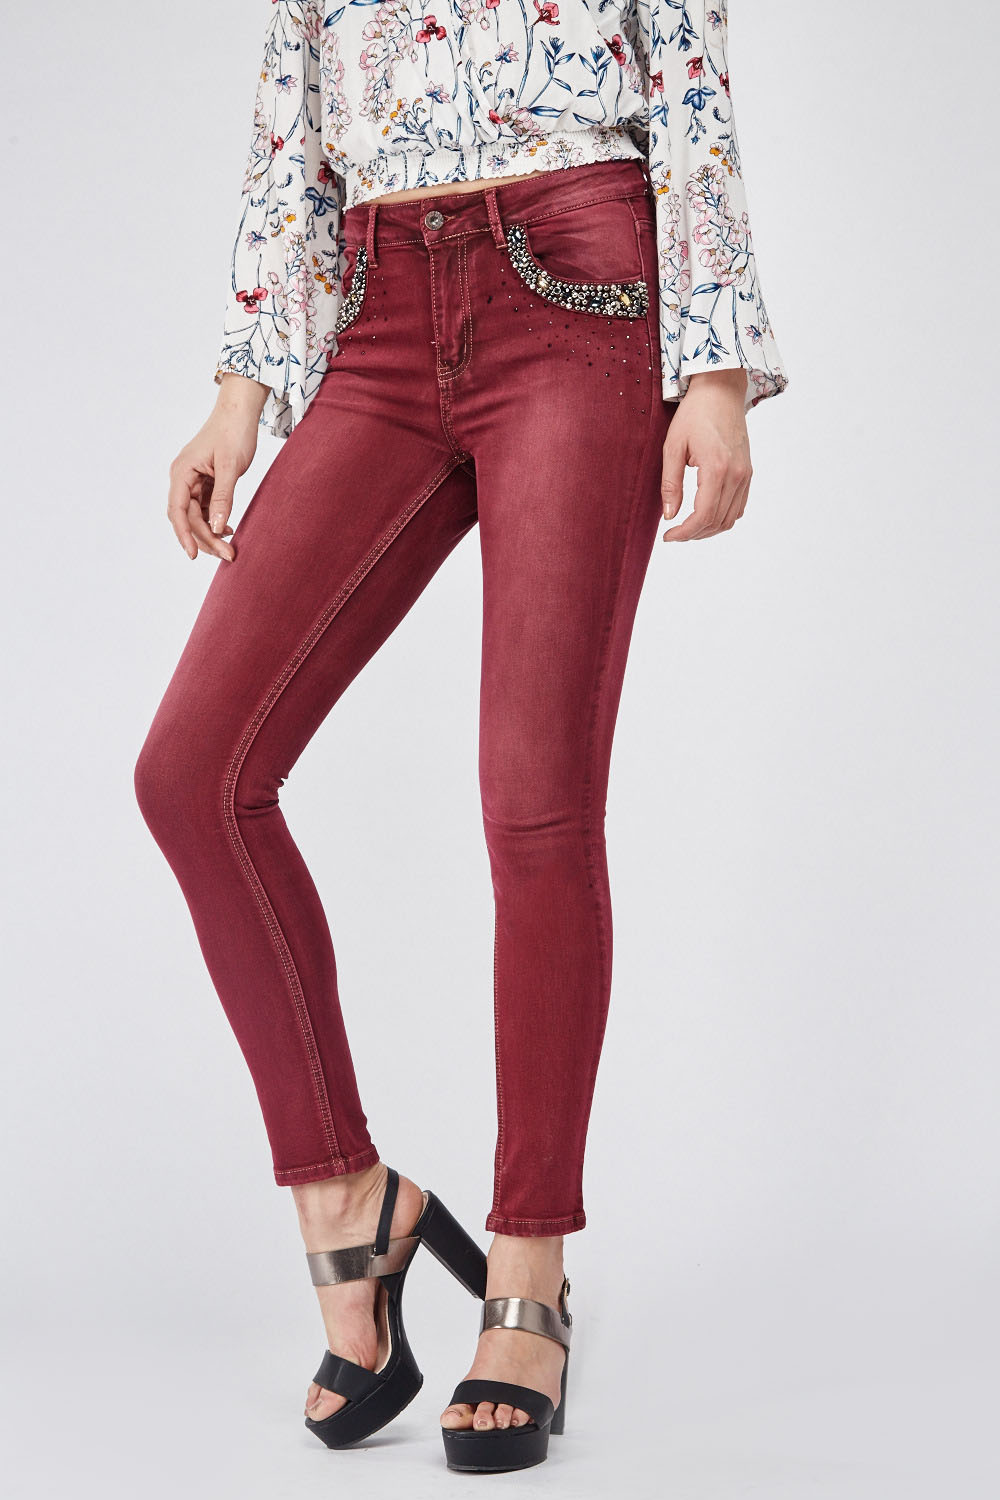 Heavily Embellished Pocket Front Skinny Jeans - Just $3